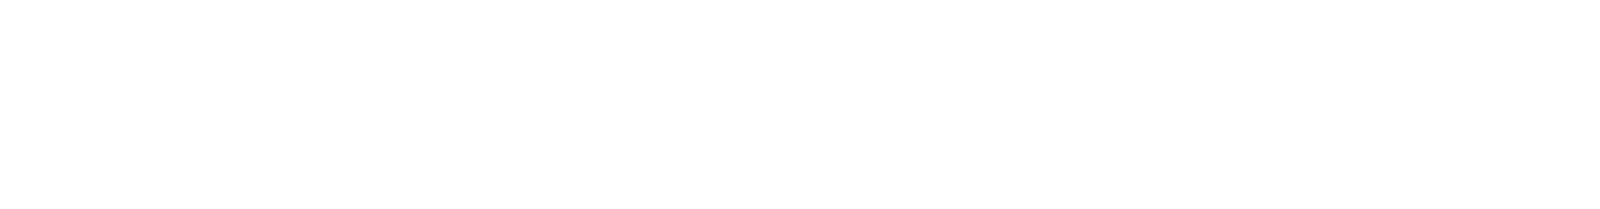 davosweb3-logo-white